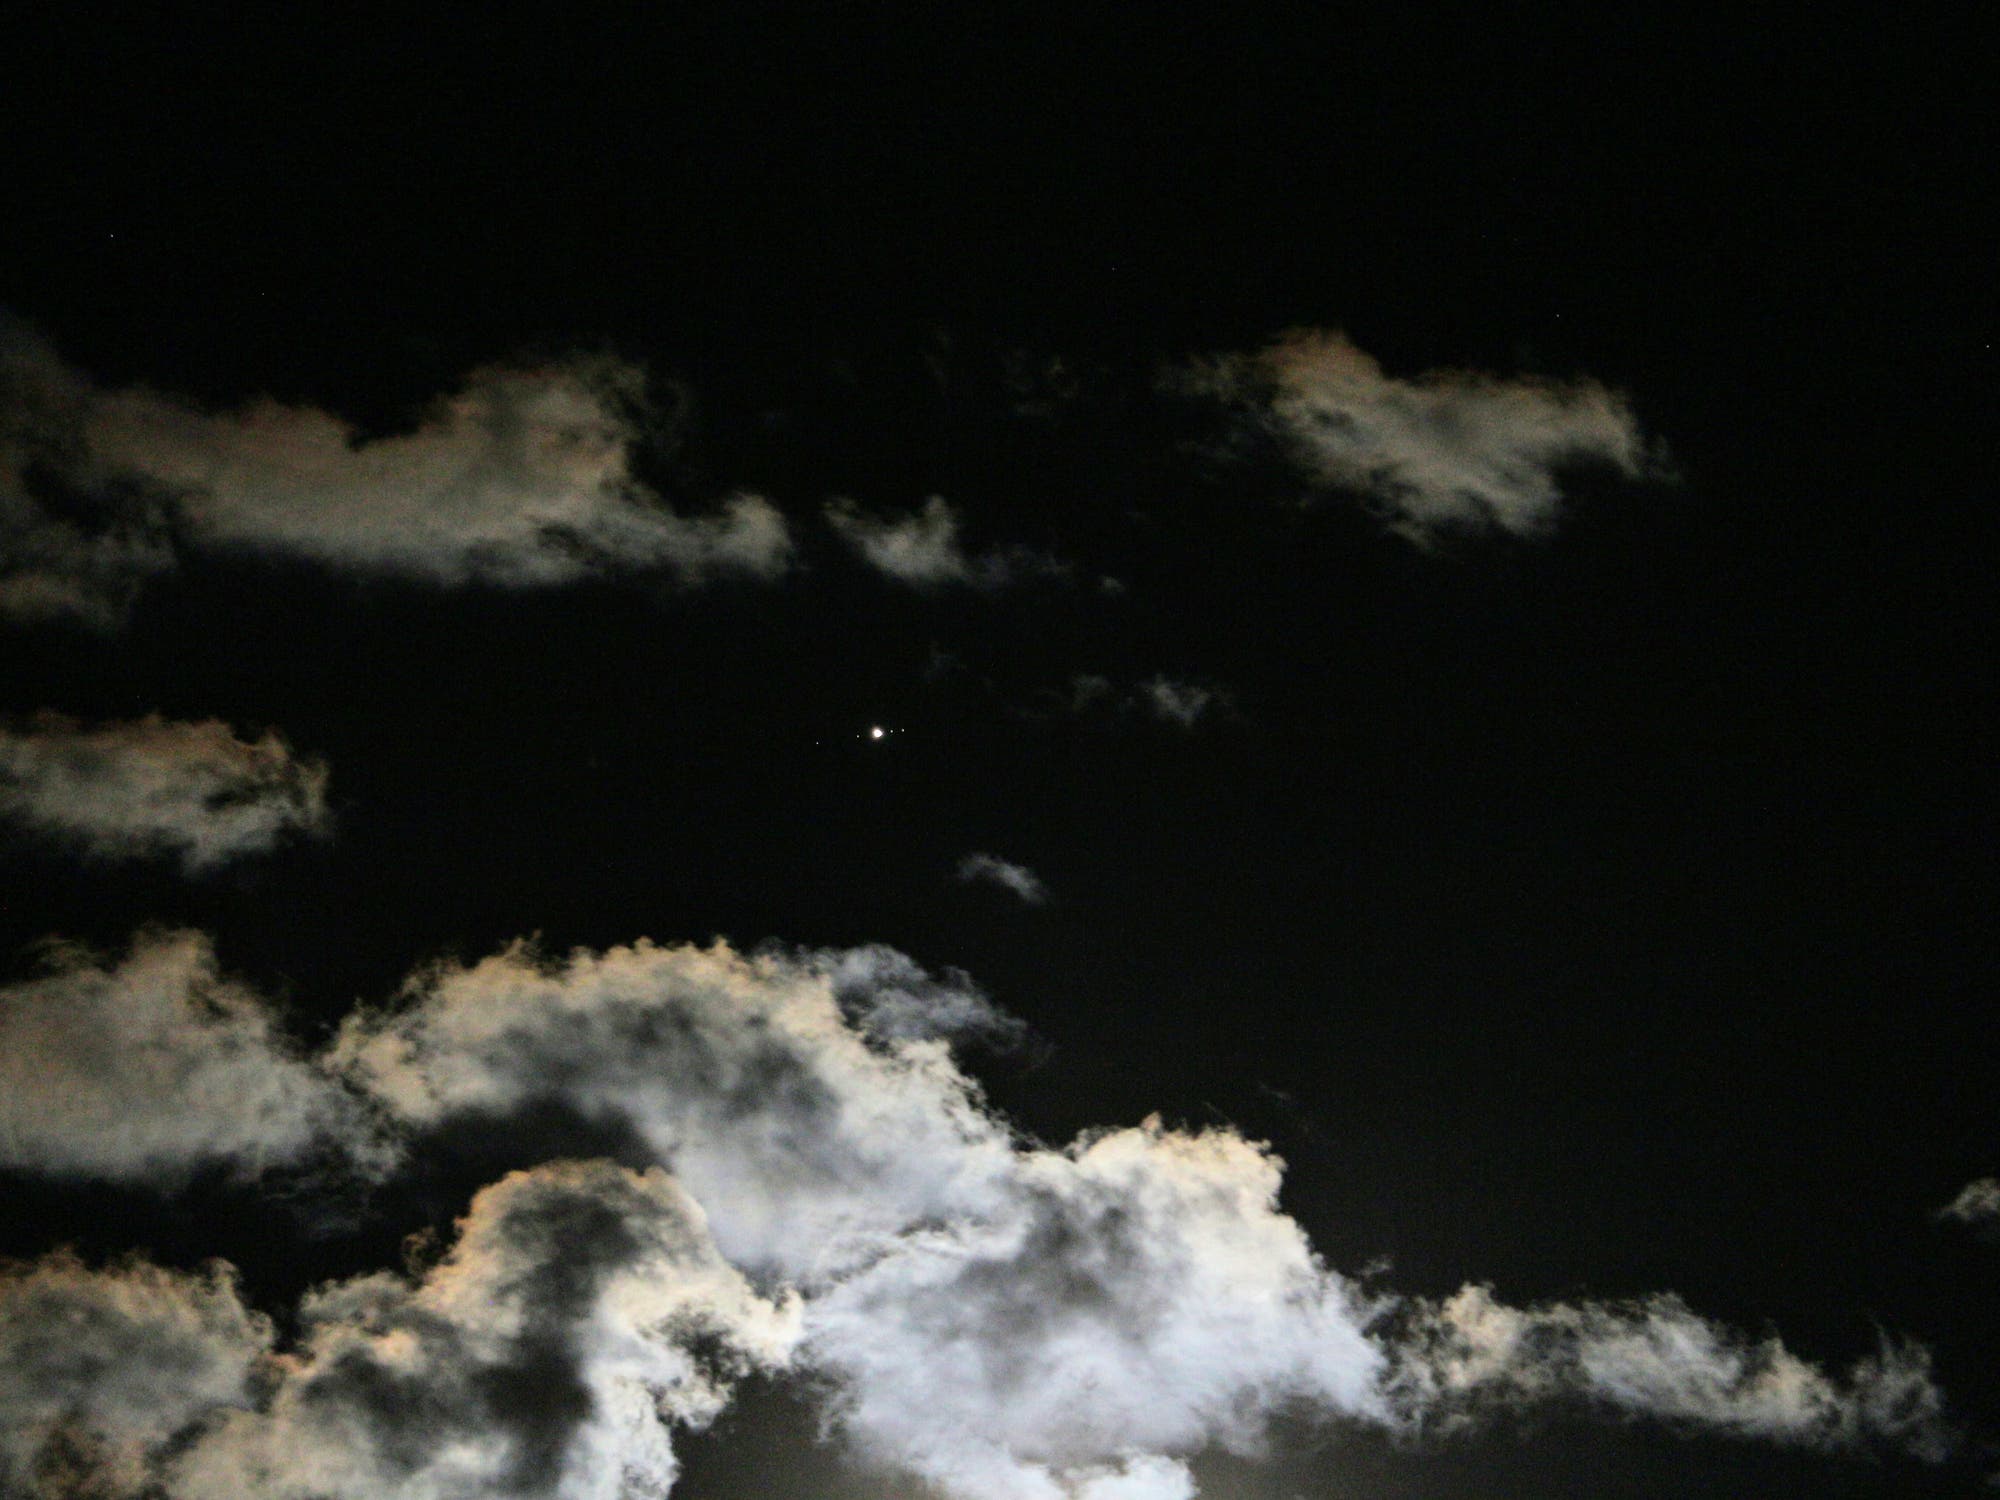 Jupiter über vom Mond beleuchteten Wolken